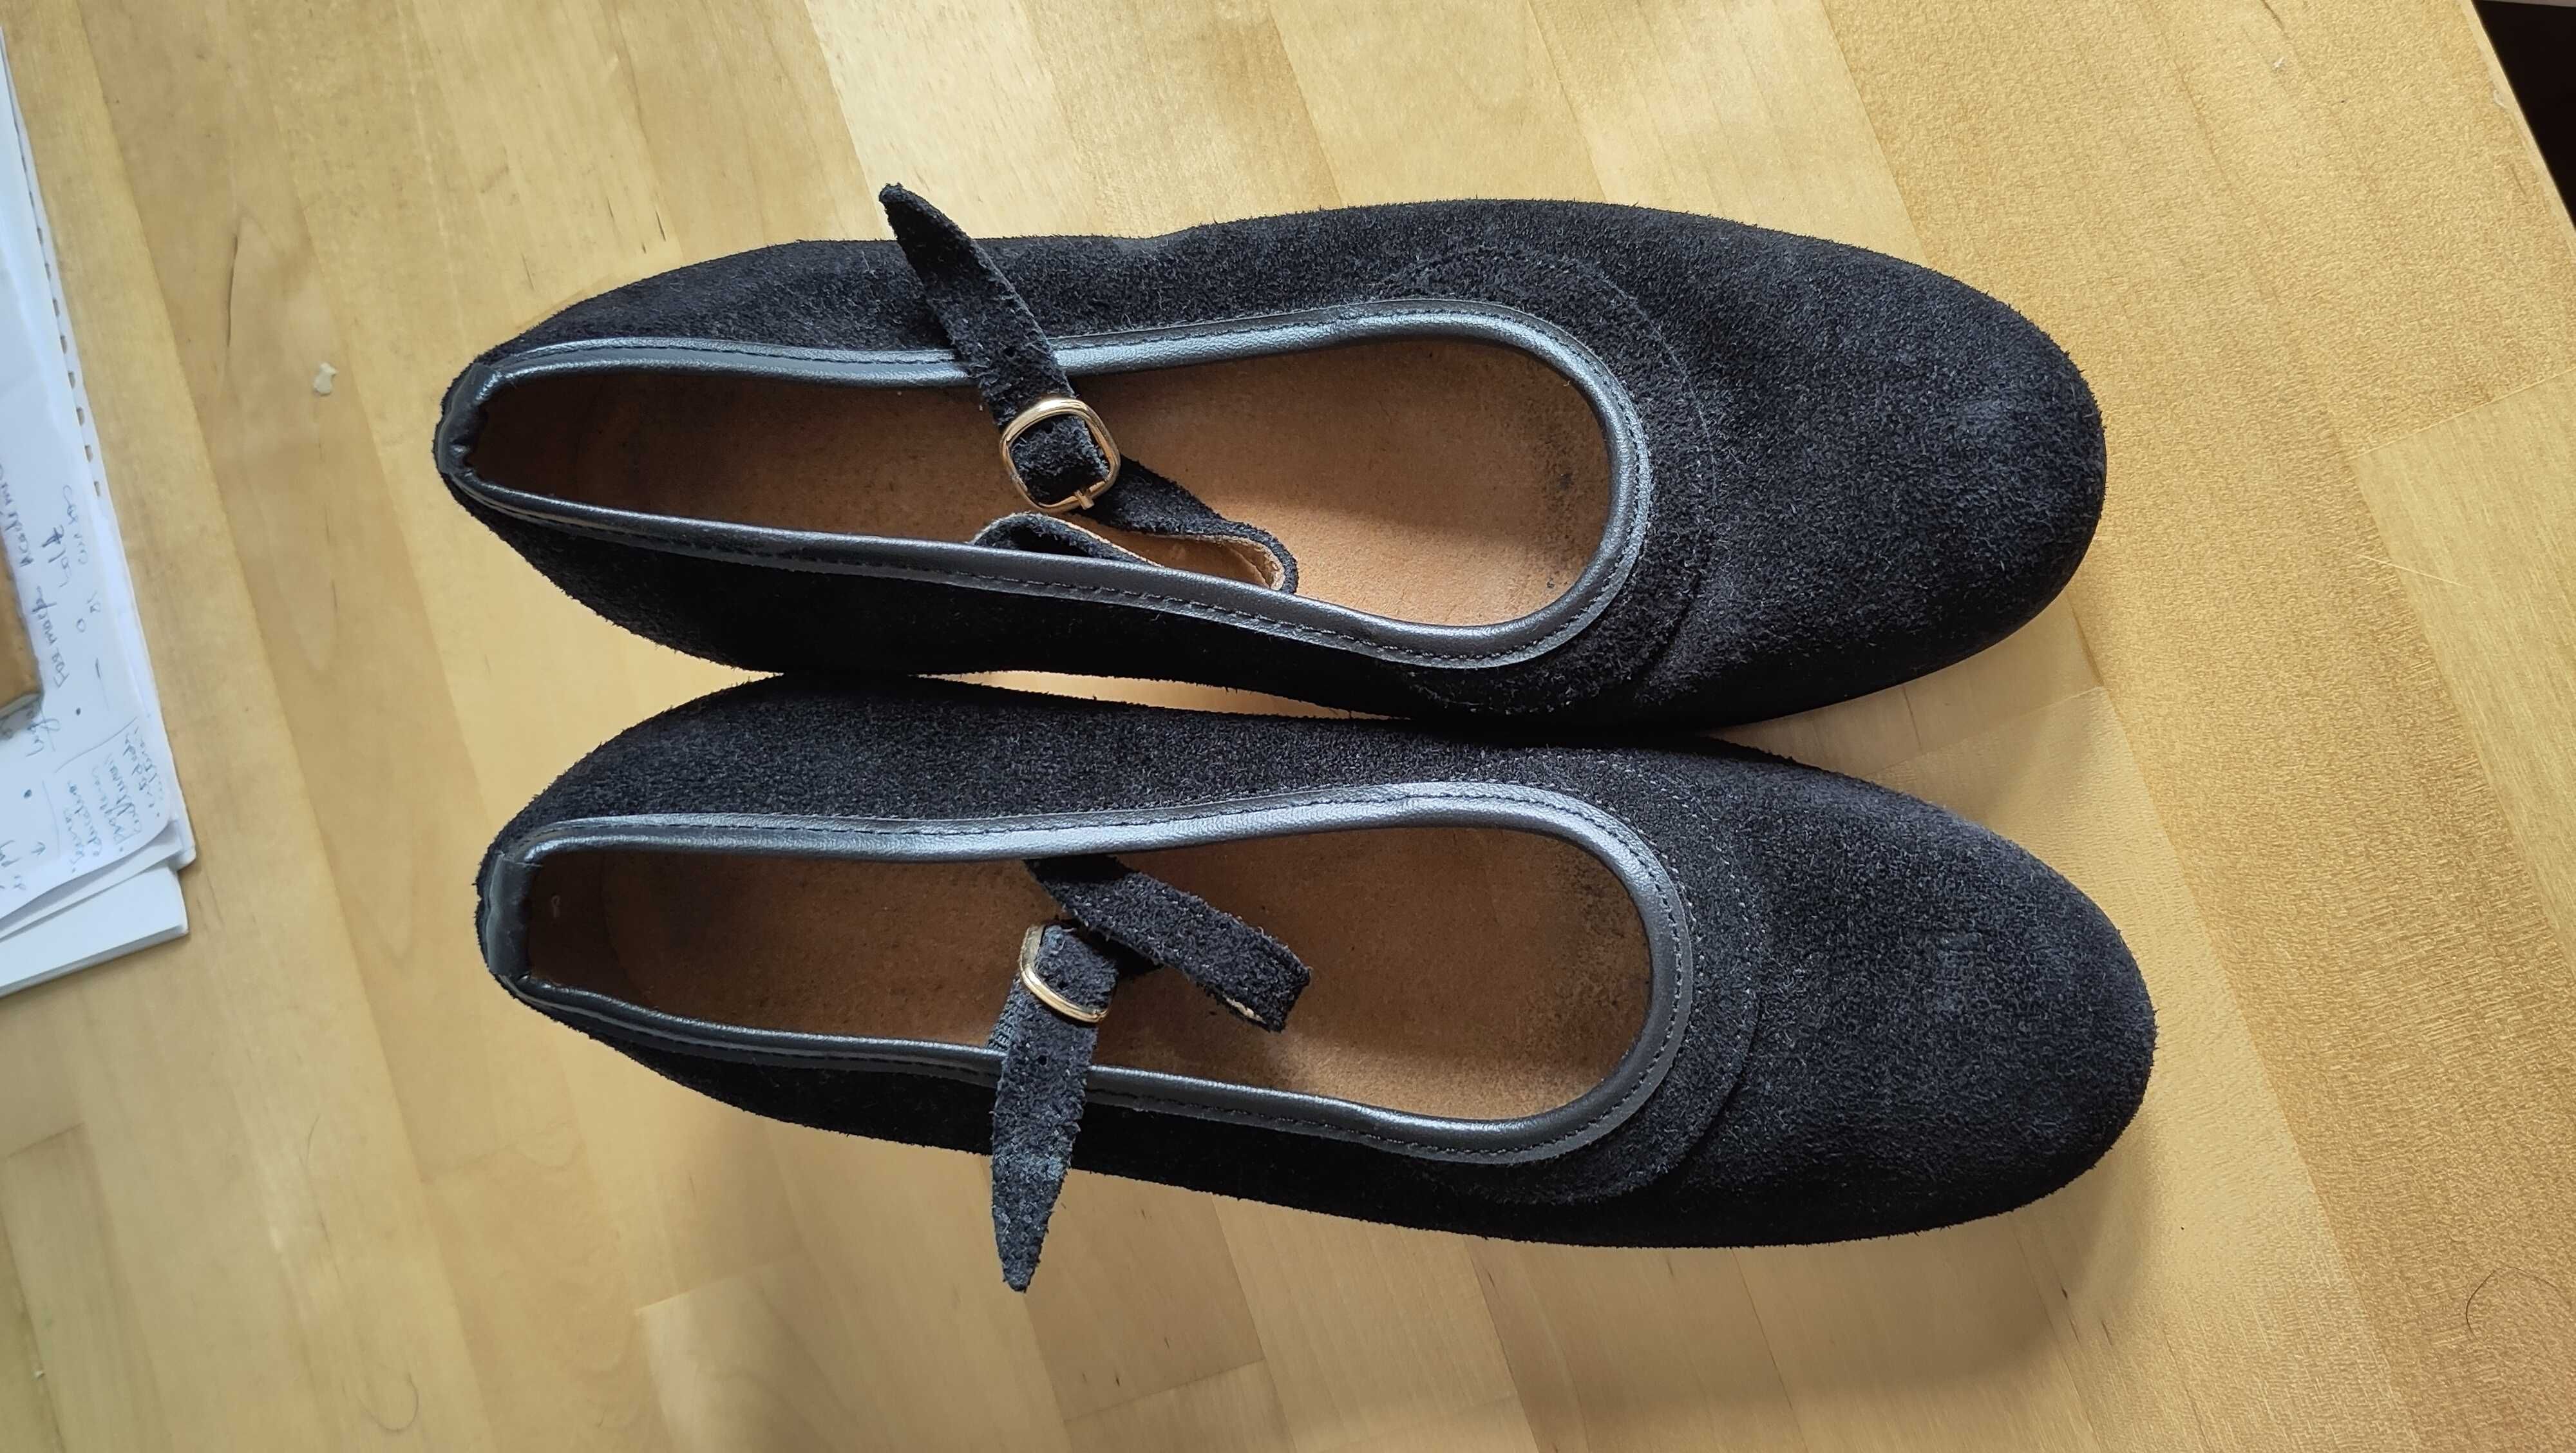 Sapatos de flamenco de senhora pretos — nº 37 (como novos)